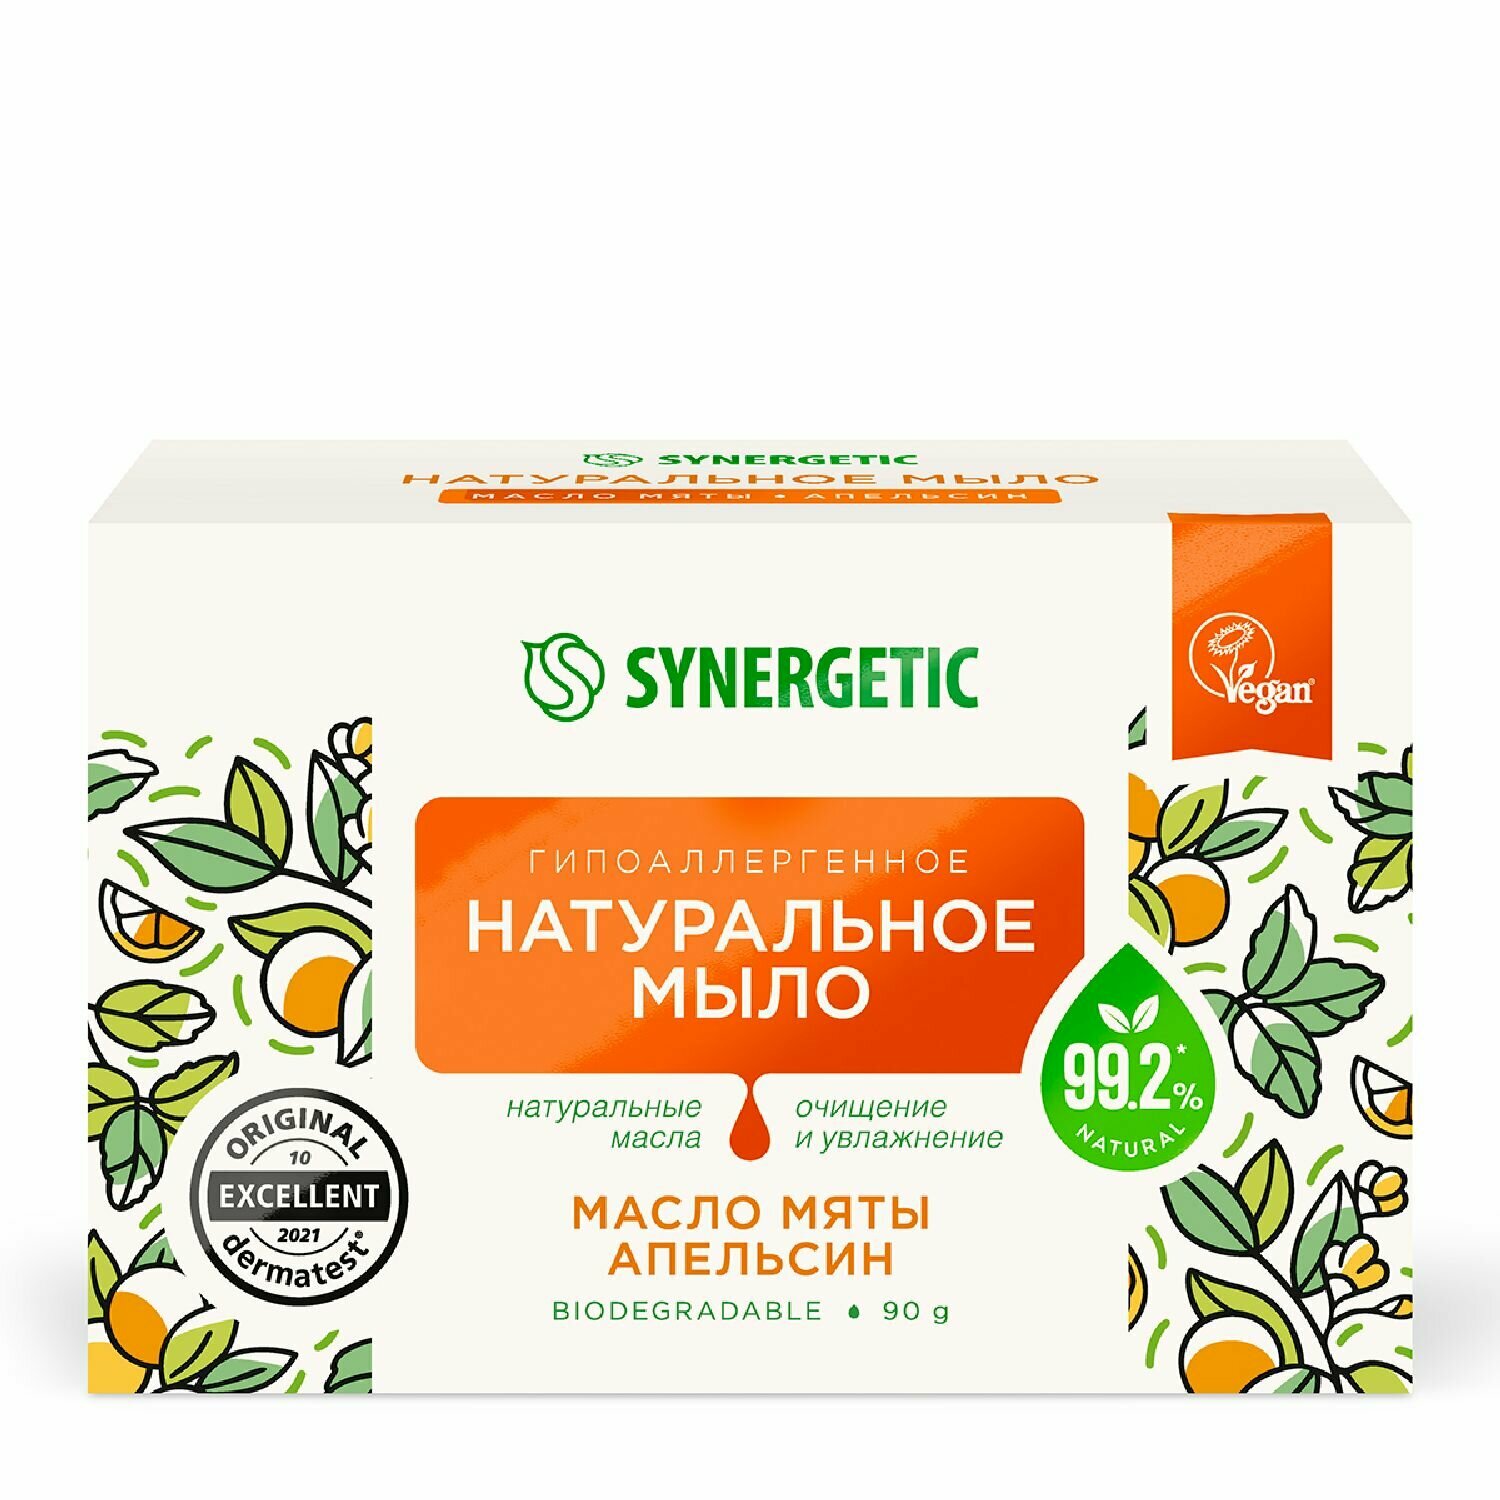 Мыло Synergetic натуральное гипоаллергенное Масло мяты и апельсин, 90 г